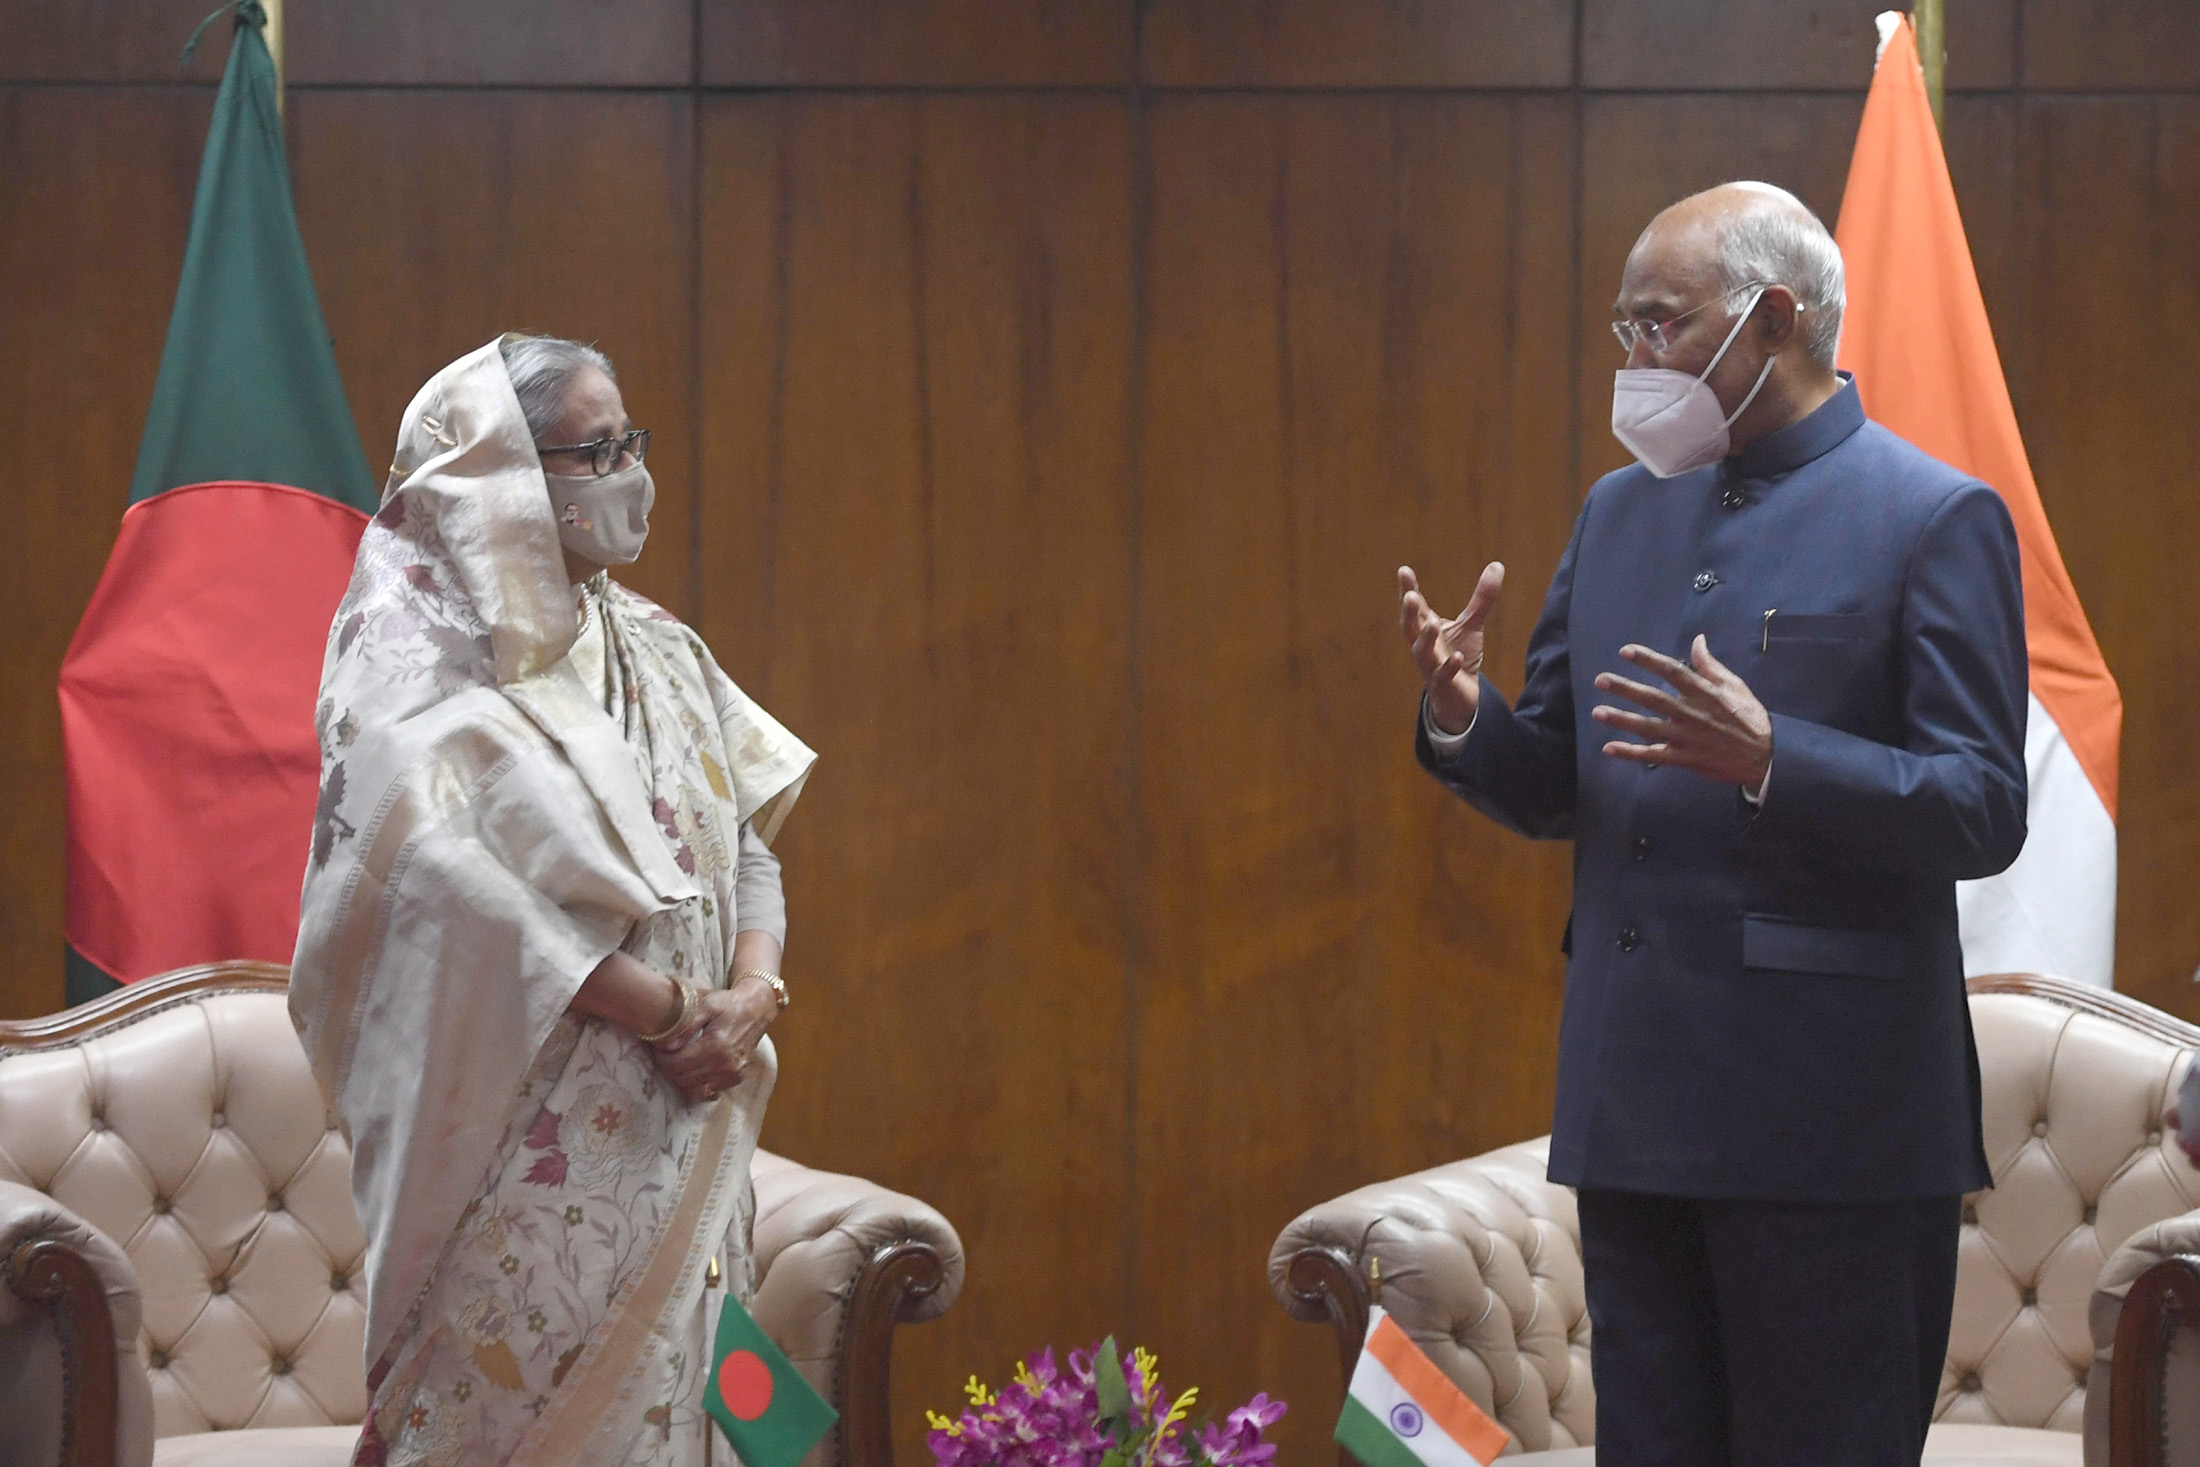 भारत और बांग्लादेश की दोस्ती और प्रगाढ़ करने की जरूरत : राष्ट्रपति कोविंद